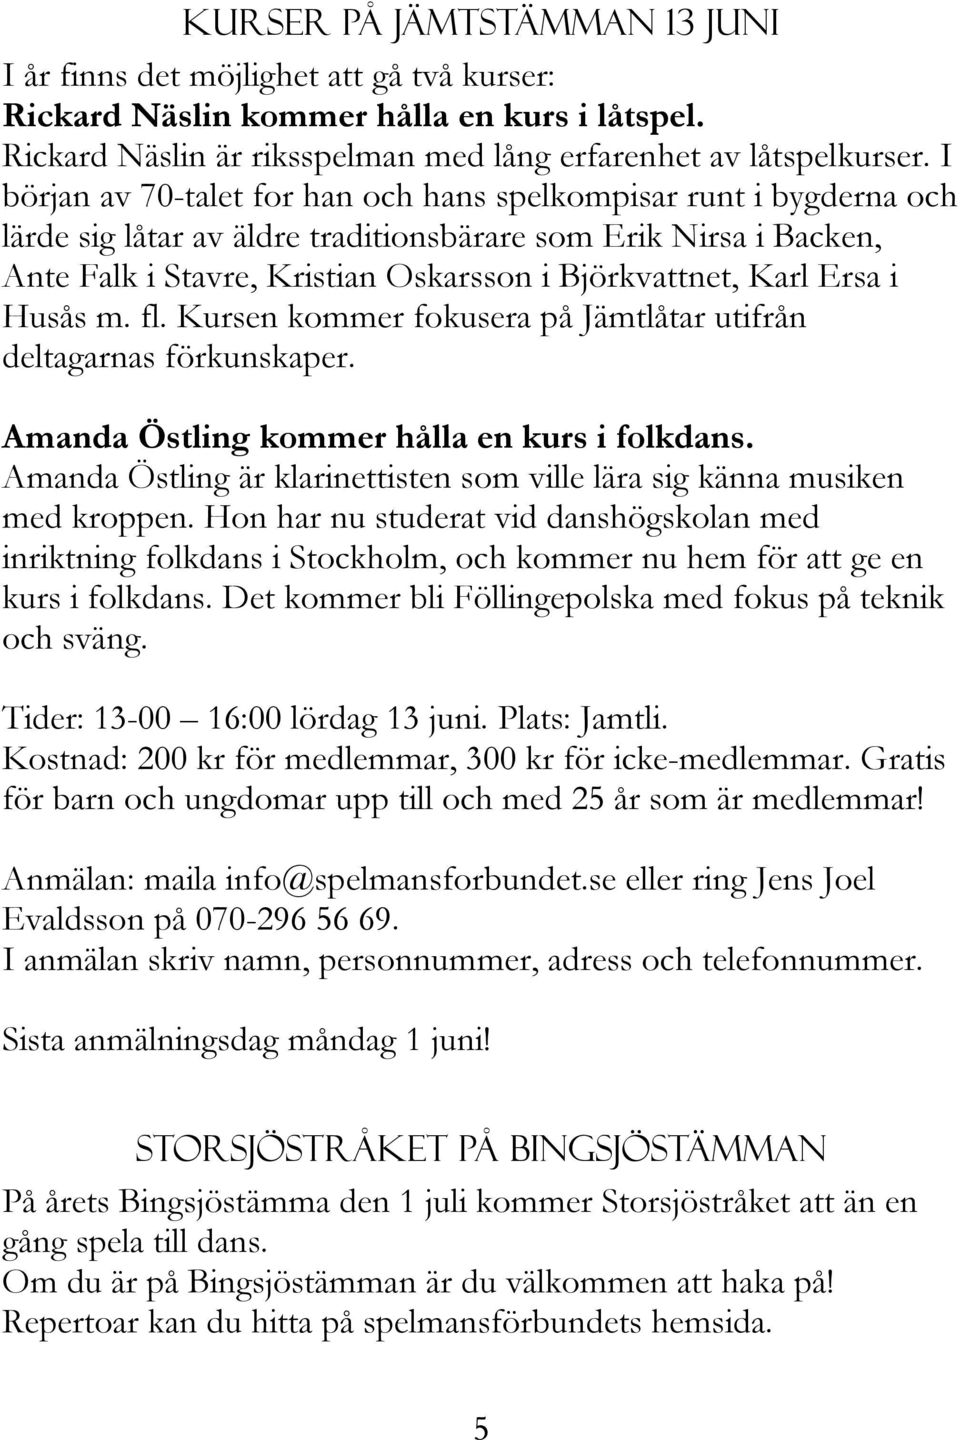 Ersa i Husås m. fl. Kursen kommer fokusera på Jämtlåtar utifrån deltagarnas förkunskaper. Amanda Östling kommer hålla en kurs i folkdans.